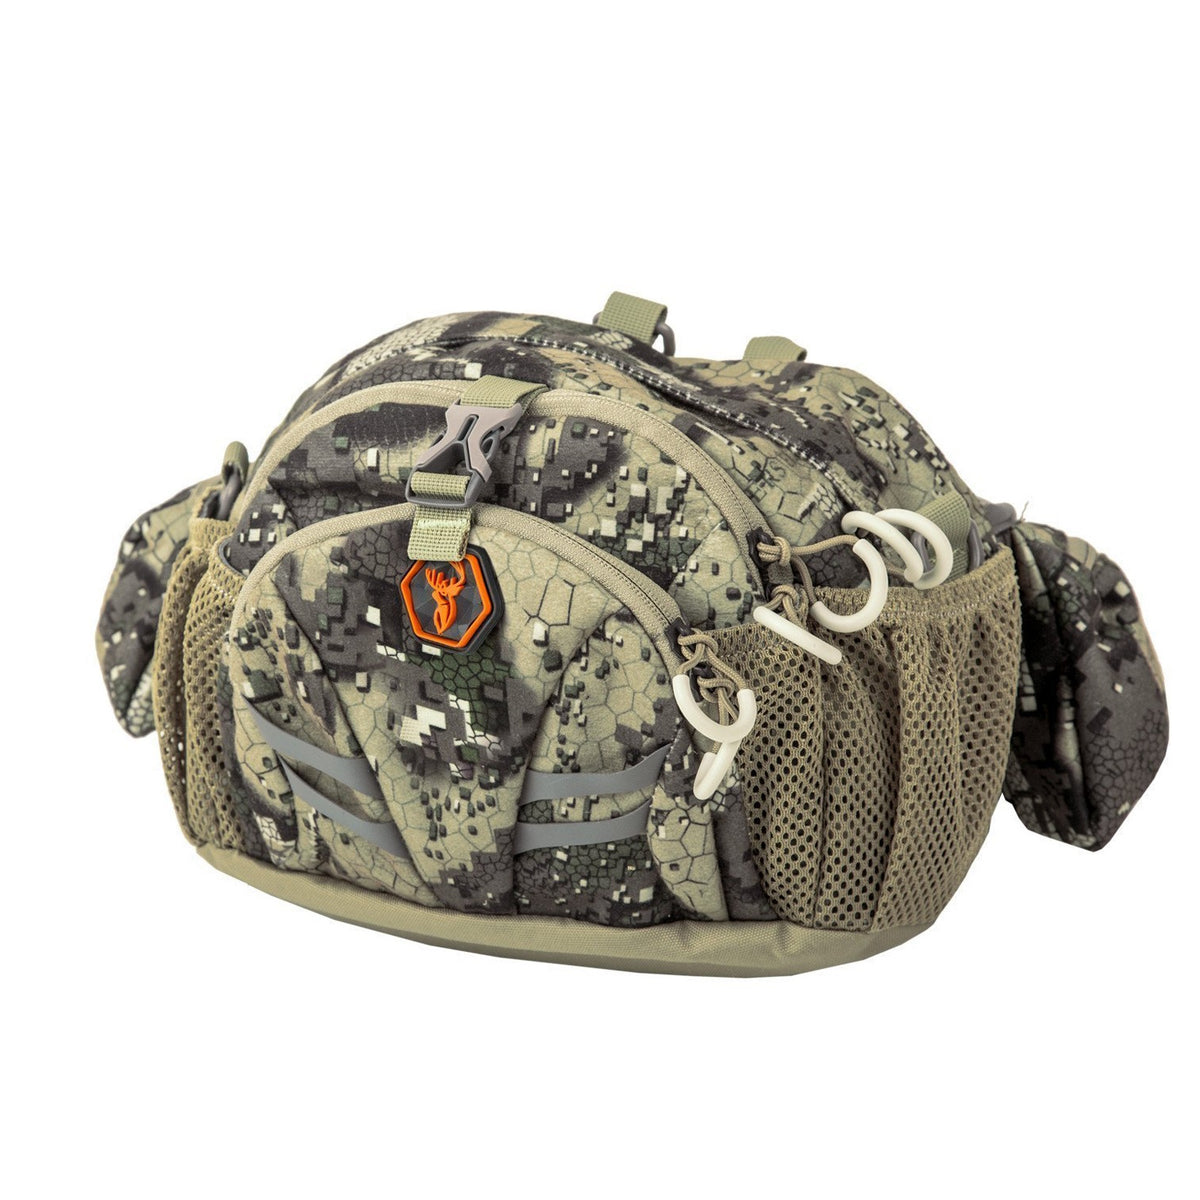 Hunters Element Divide Belt Bag in Desolve Veil Camouflage